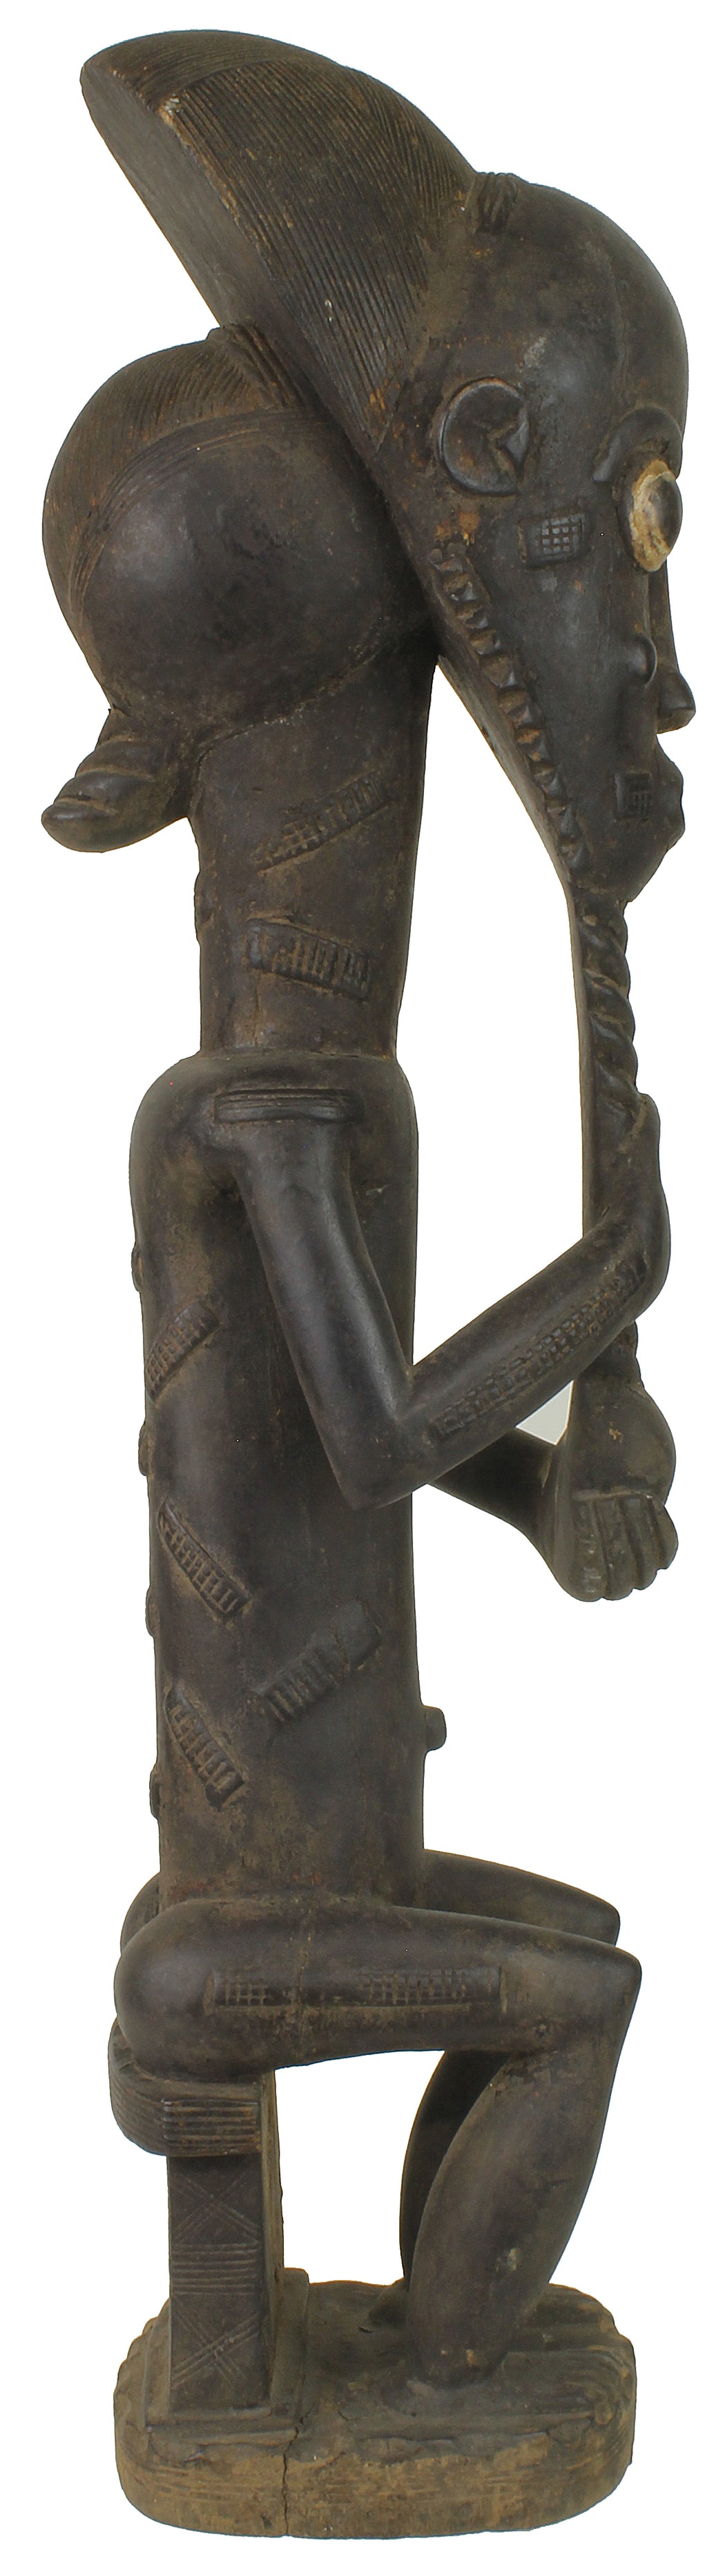 Large Baule Male Ancestor Spirit Statue | 20.5" - Niger Bend